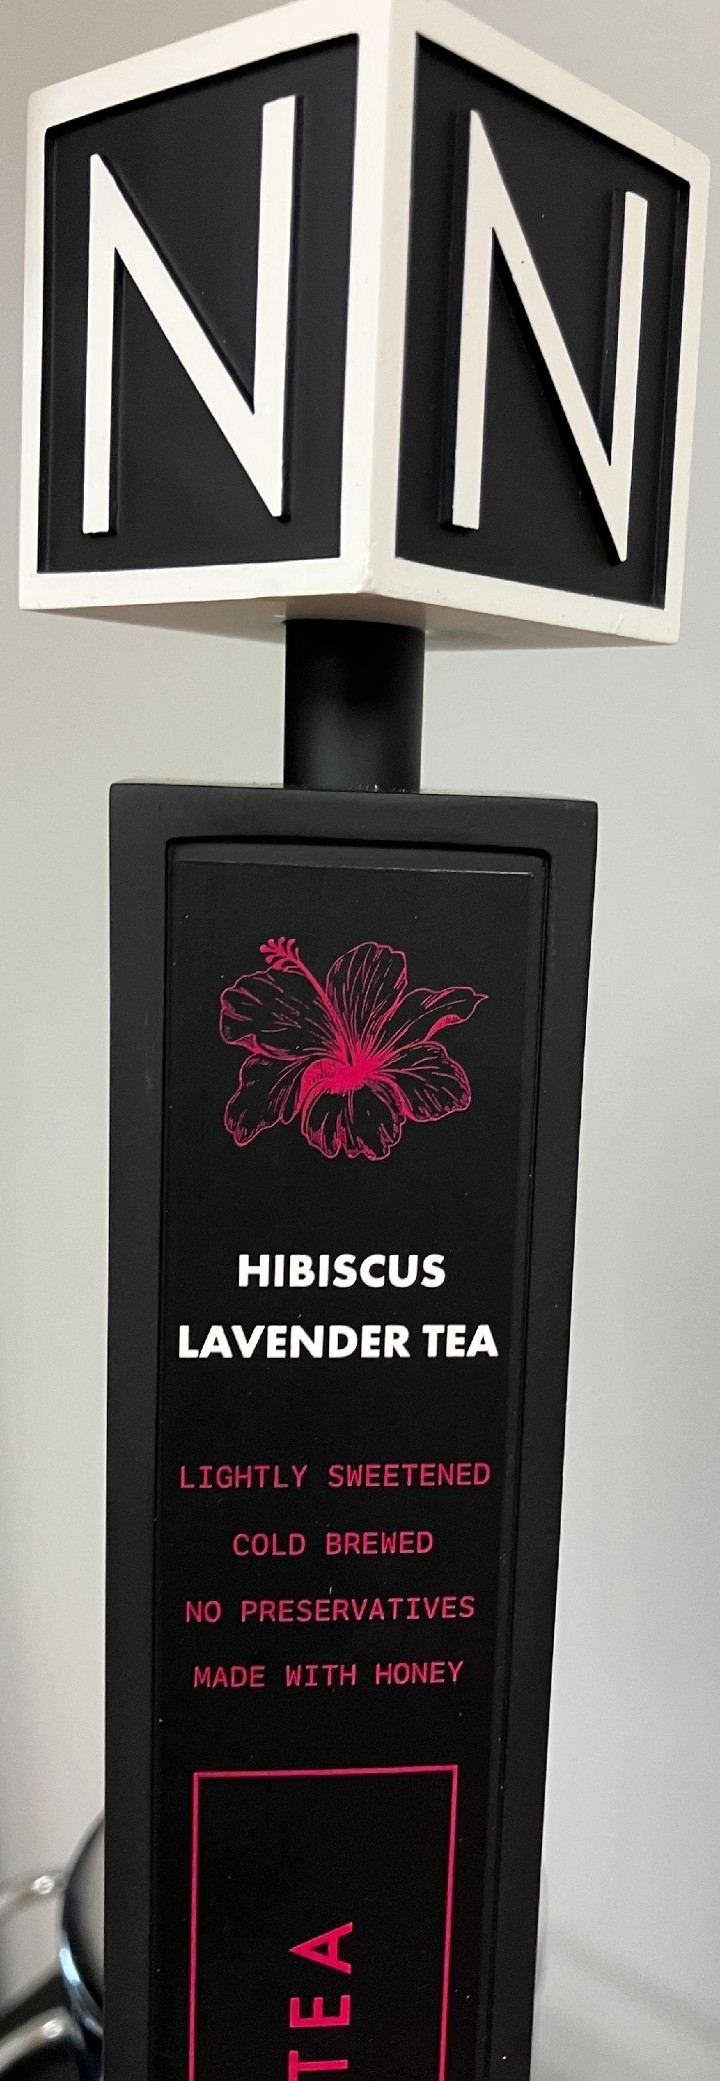 Hibiscus Lavender Tea